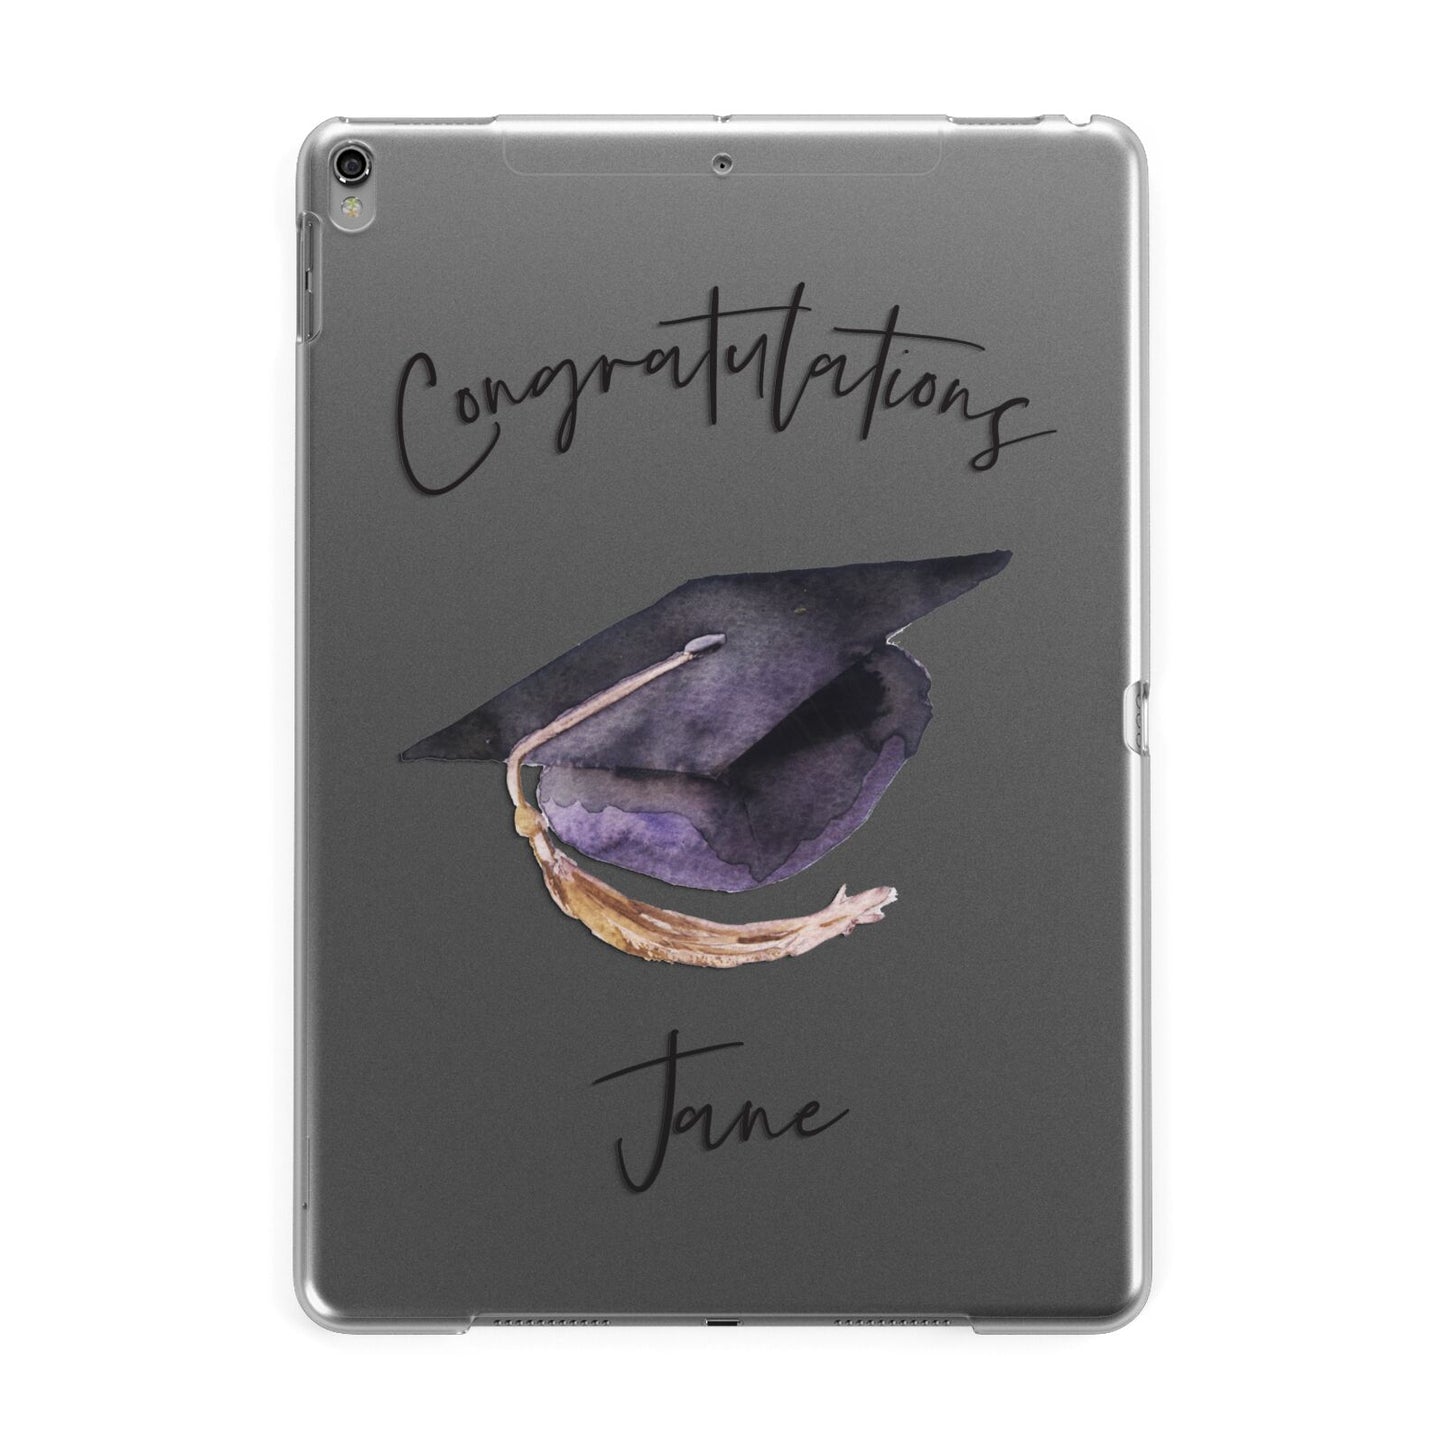 Congratulations Graduate Custom Apple iPad Grey Case